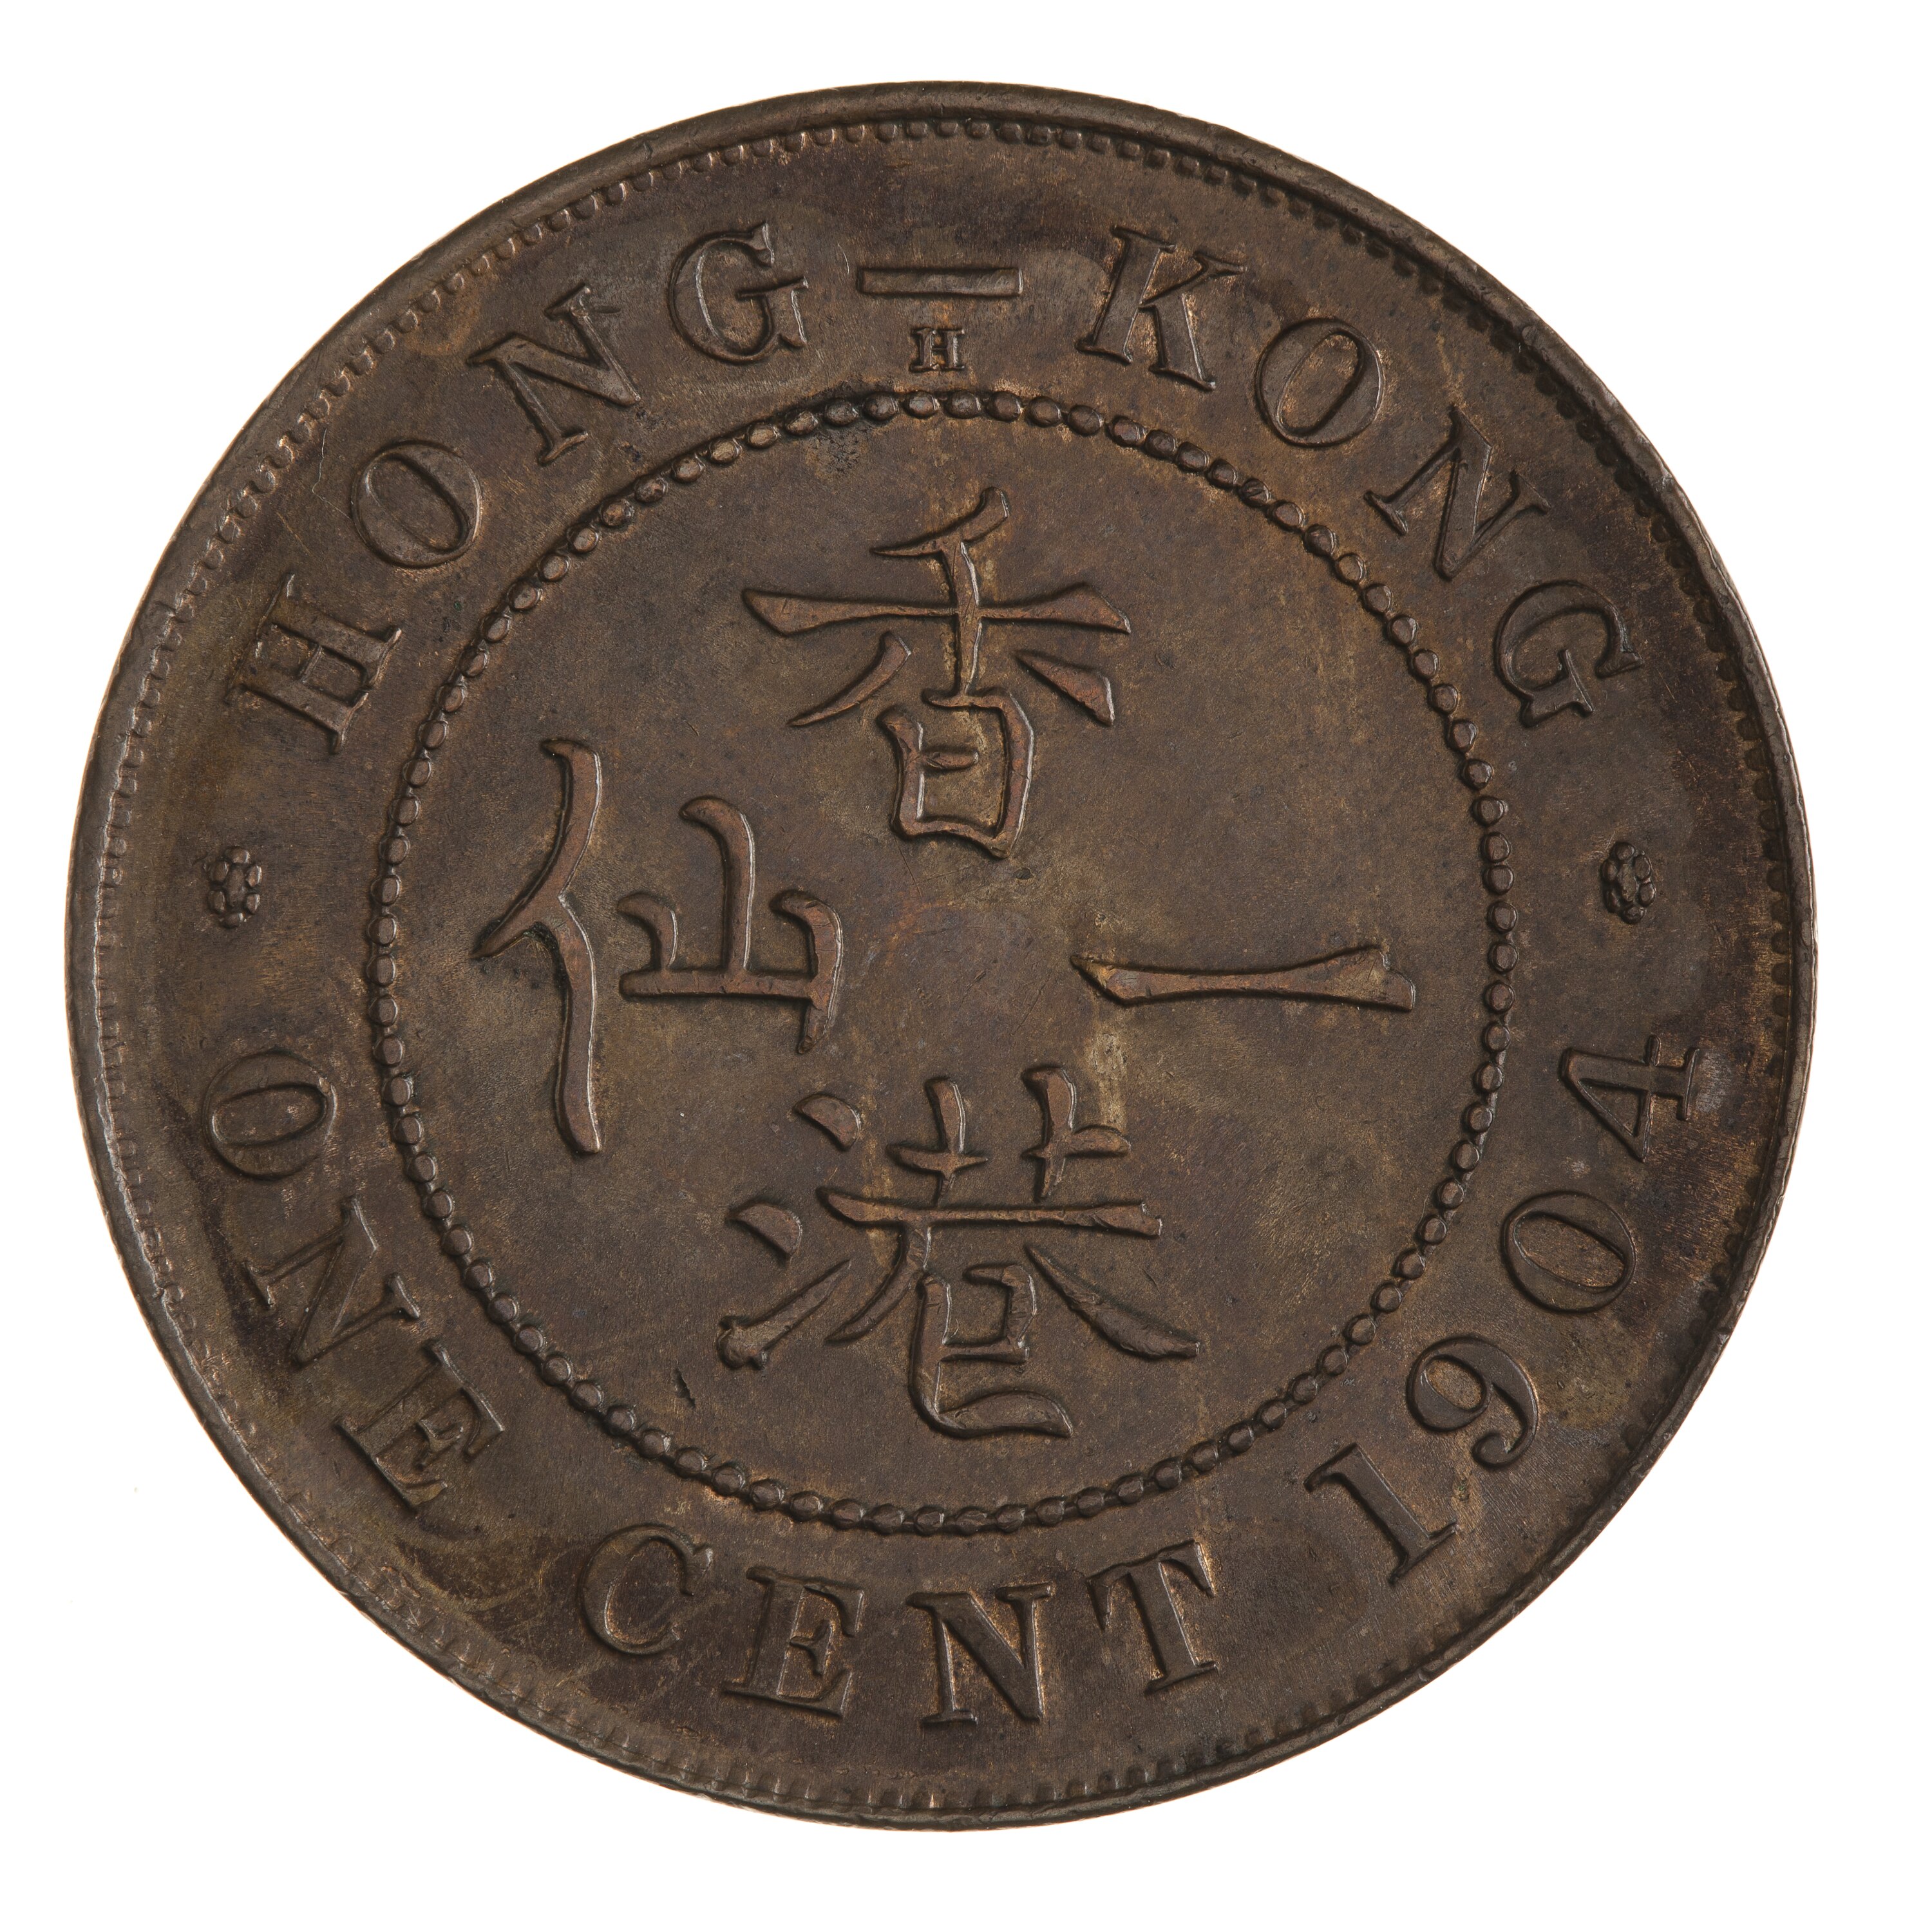 Coin - 1 Cent, Hong Kong, 1904